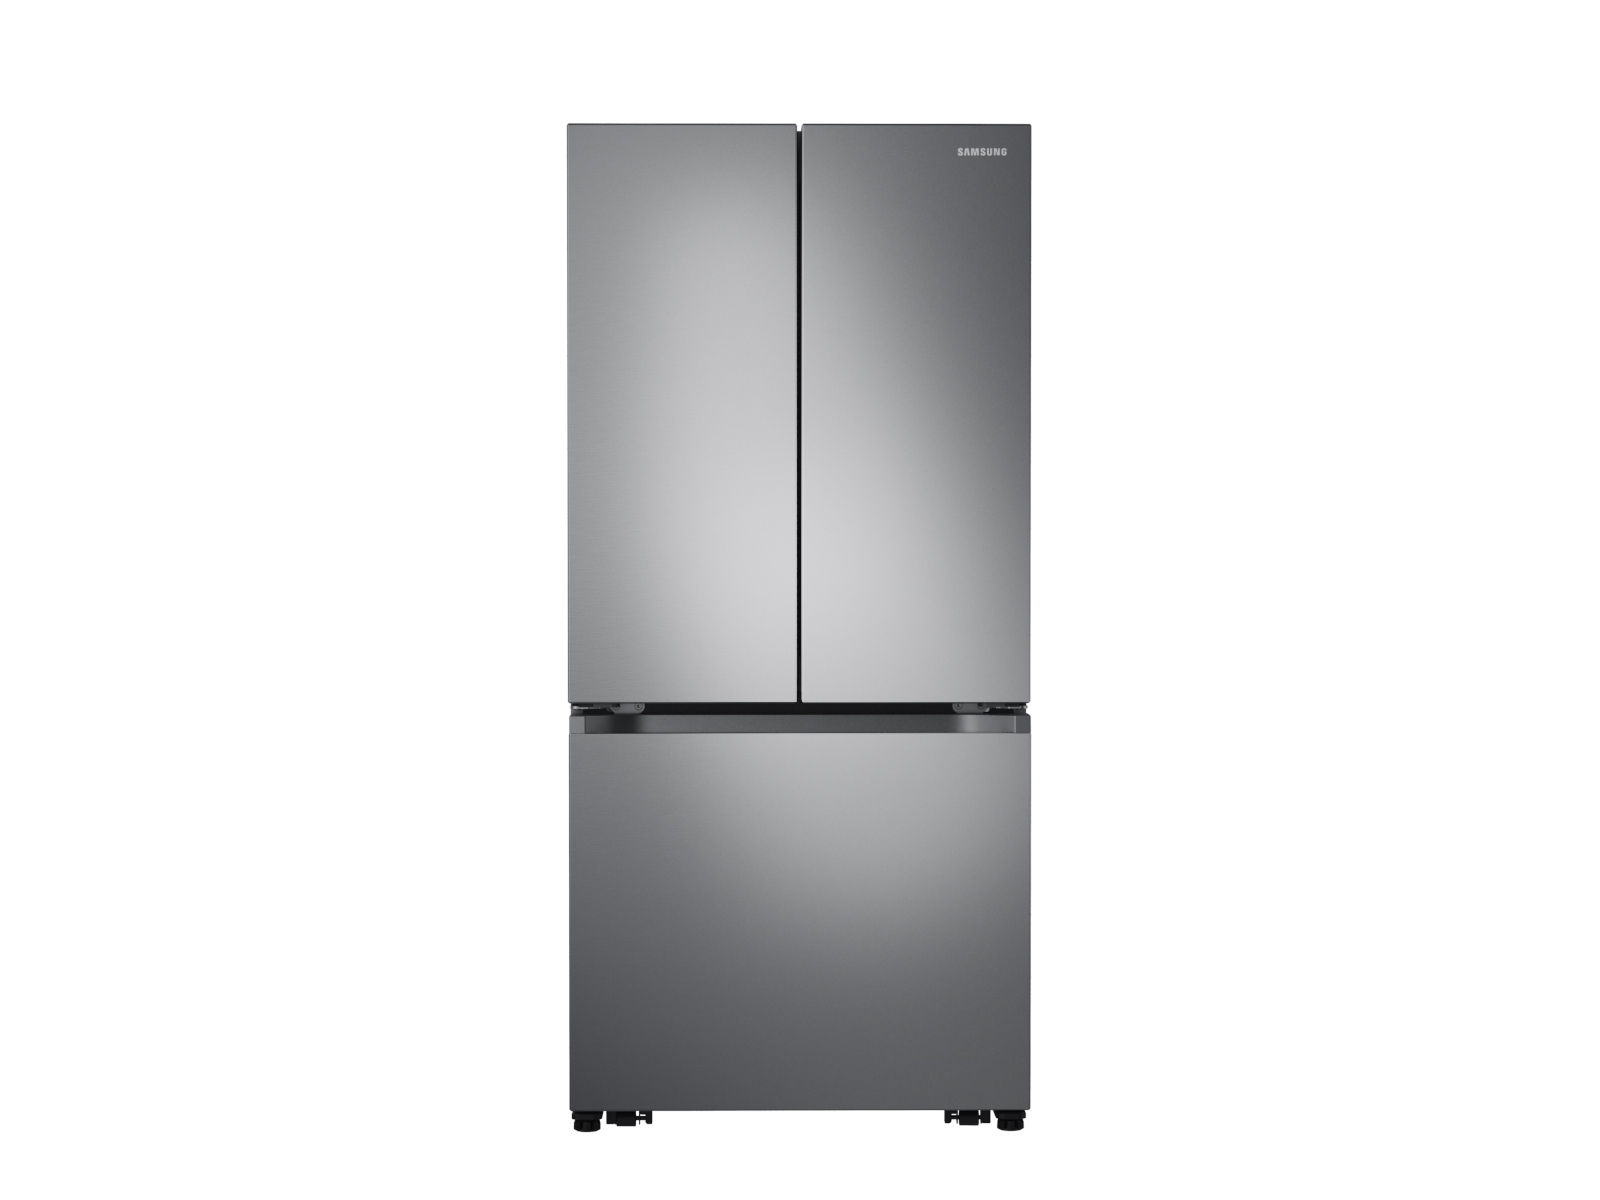 Thumbnail image of 19.5 cu. ft. Smart 3-Door French Door Refrigerator in Stainless Steel